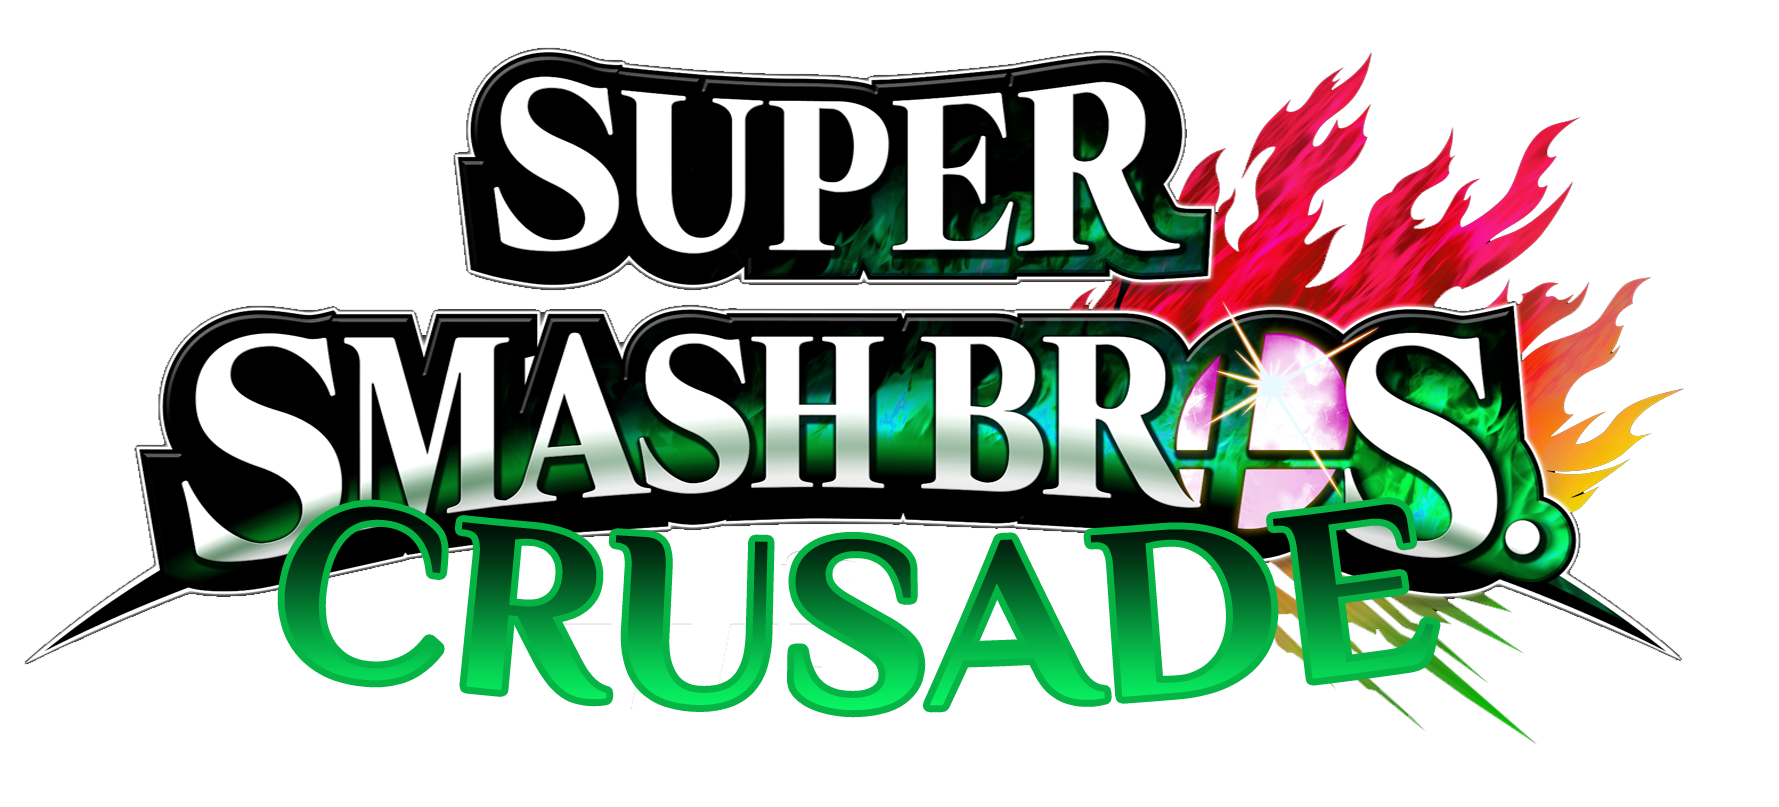 super smash bros crusade 0.7 download